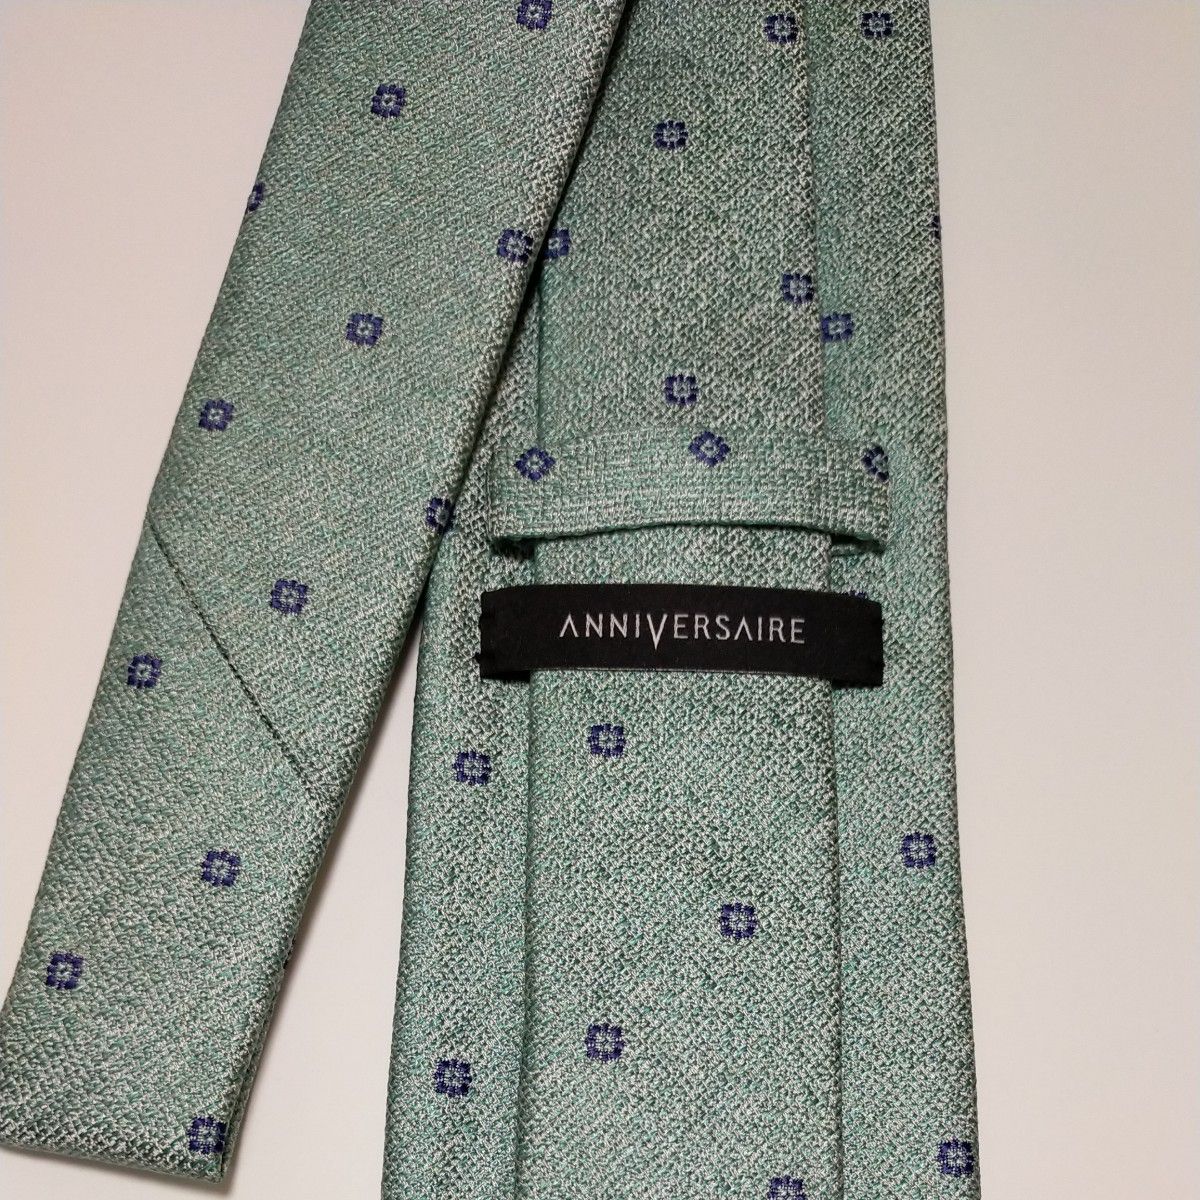  新品ブランドネクタイ 超お買い得品！高品質ネクタイ 日本製 シルク100% 超特価！タグ付き  高級ネクタイ 破格